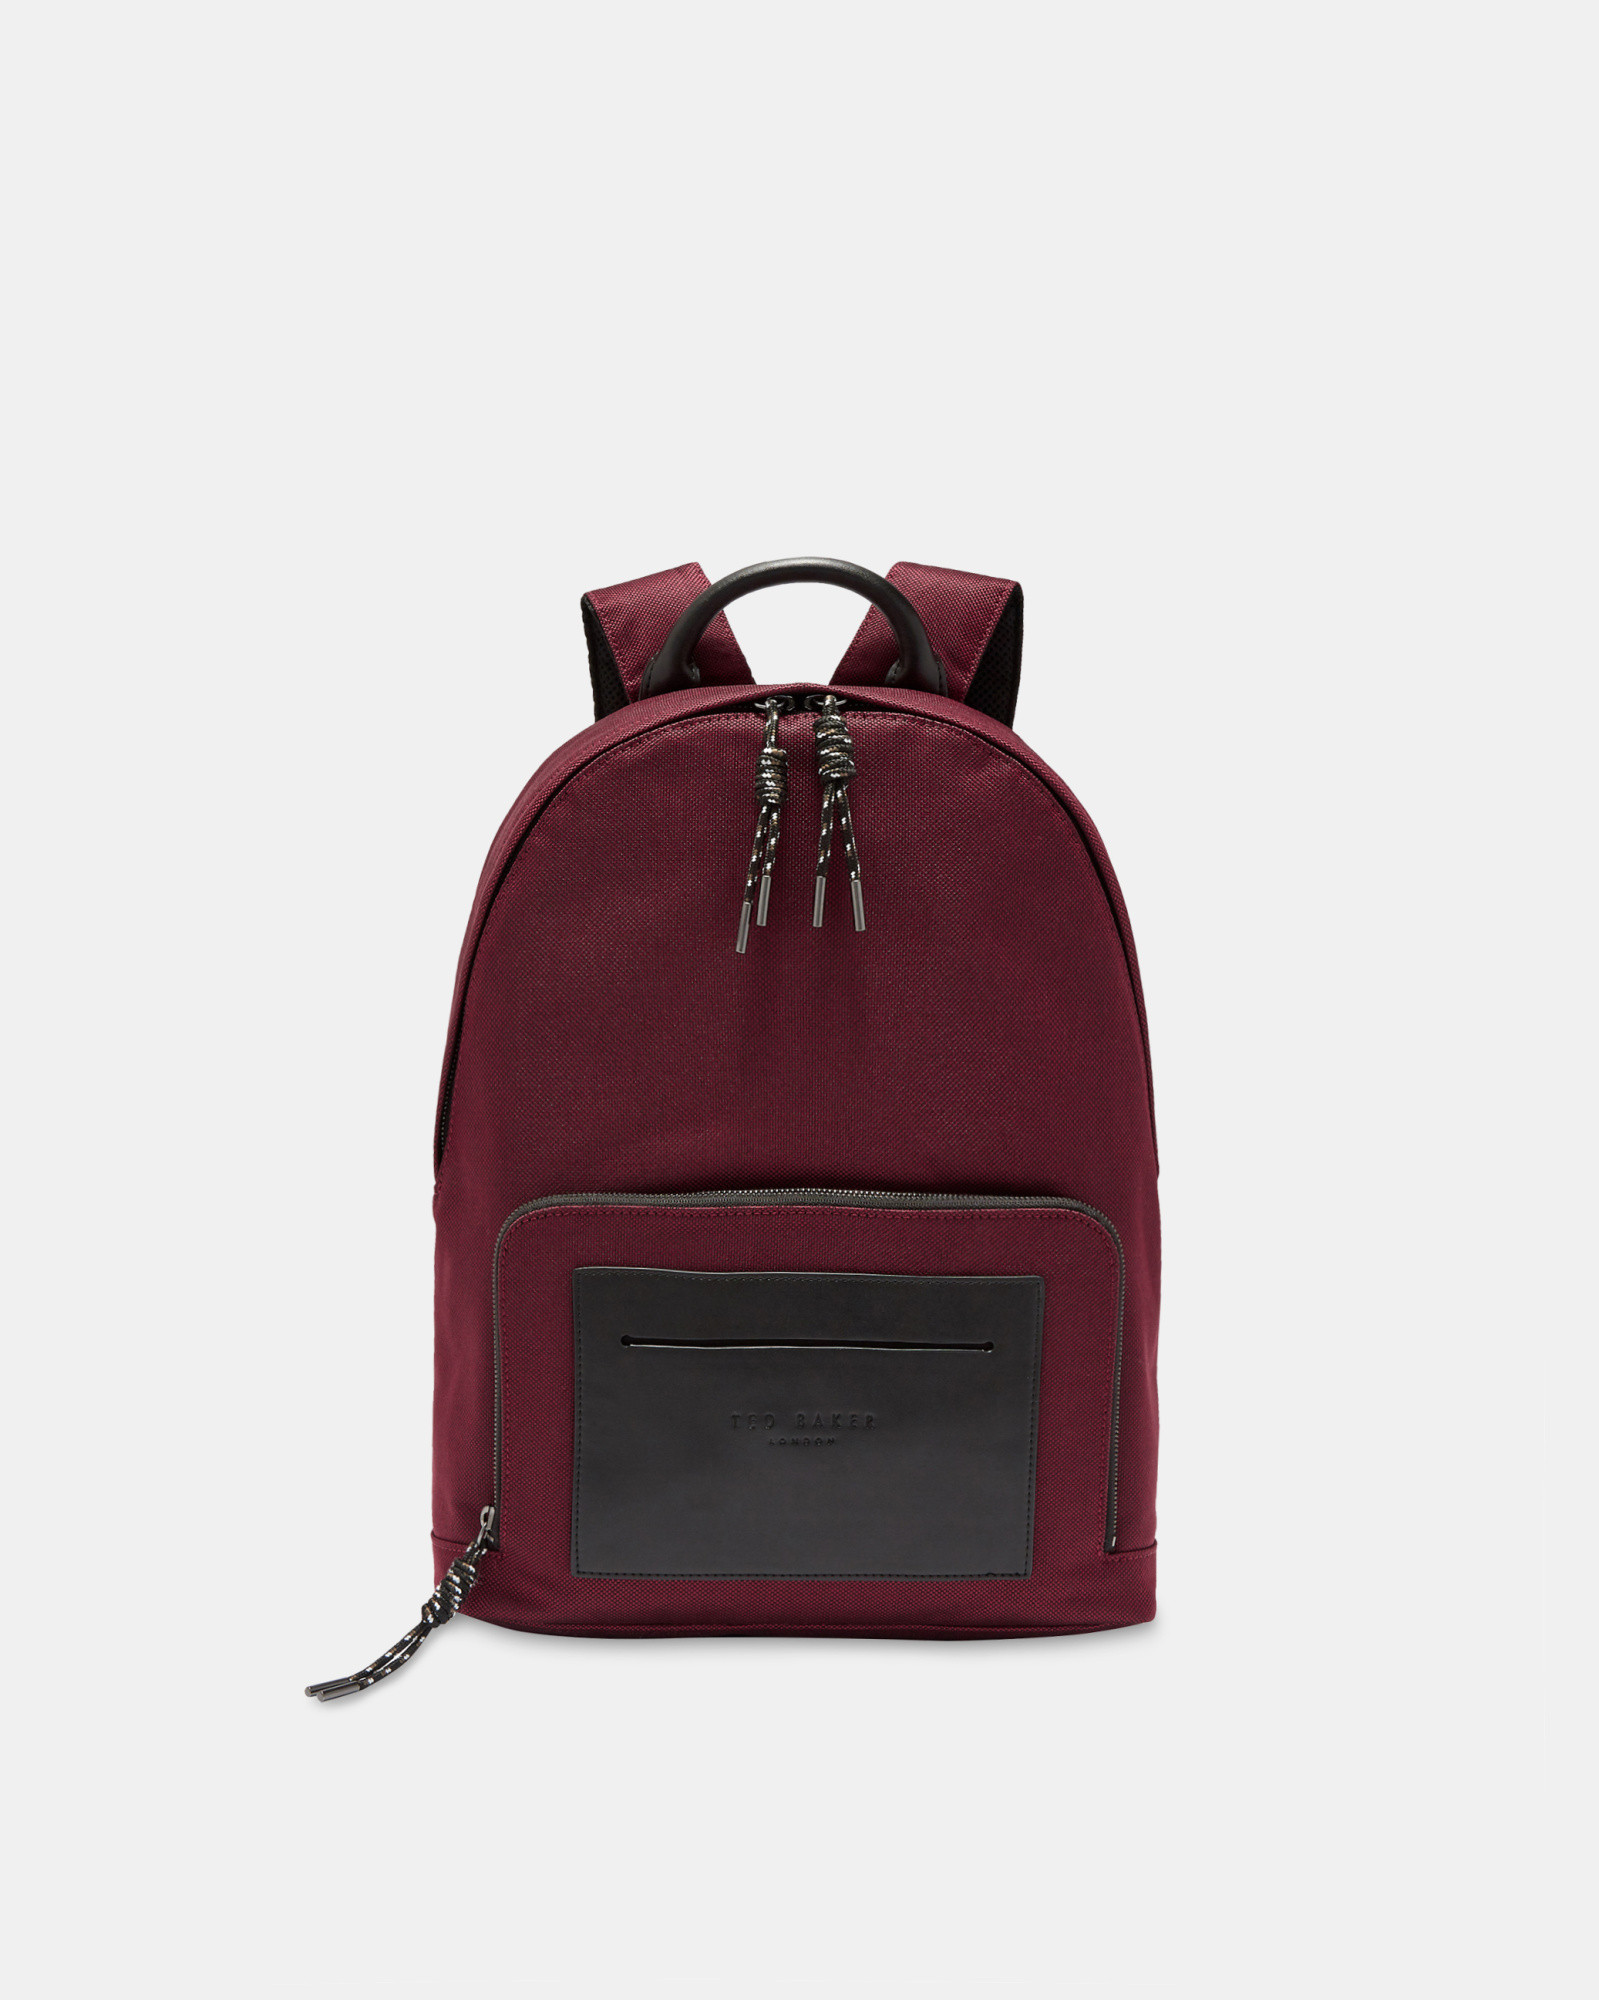 FILER Smart nylon backpack